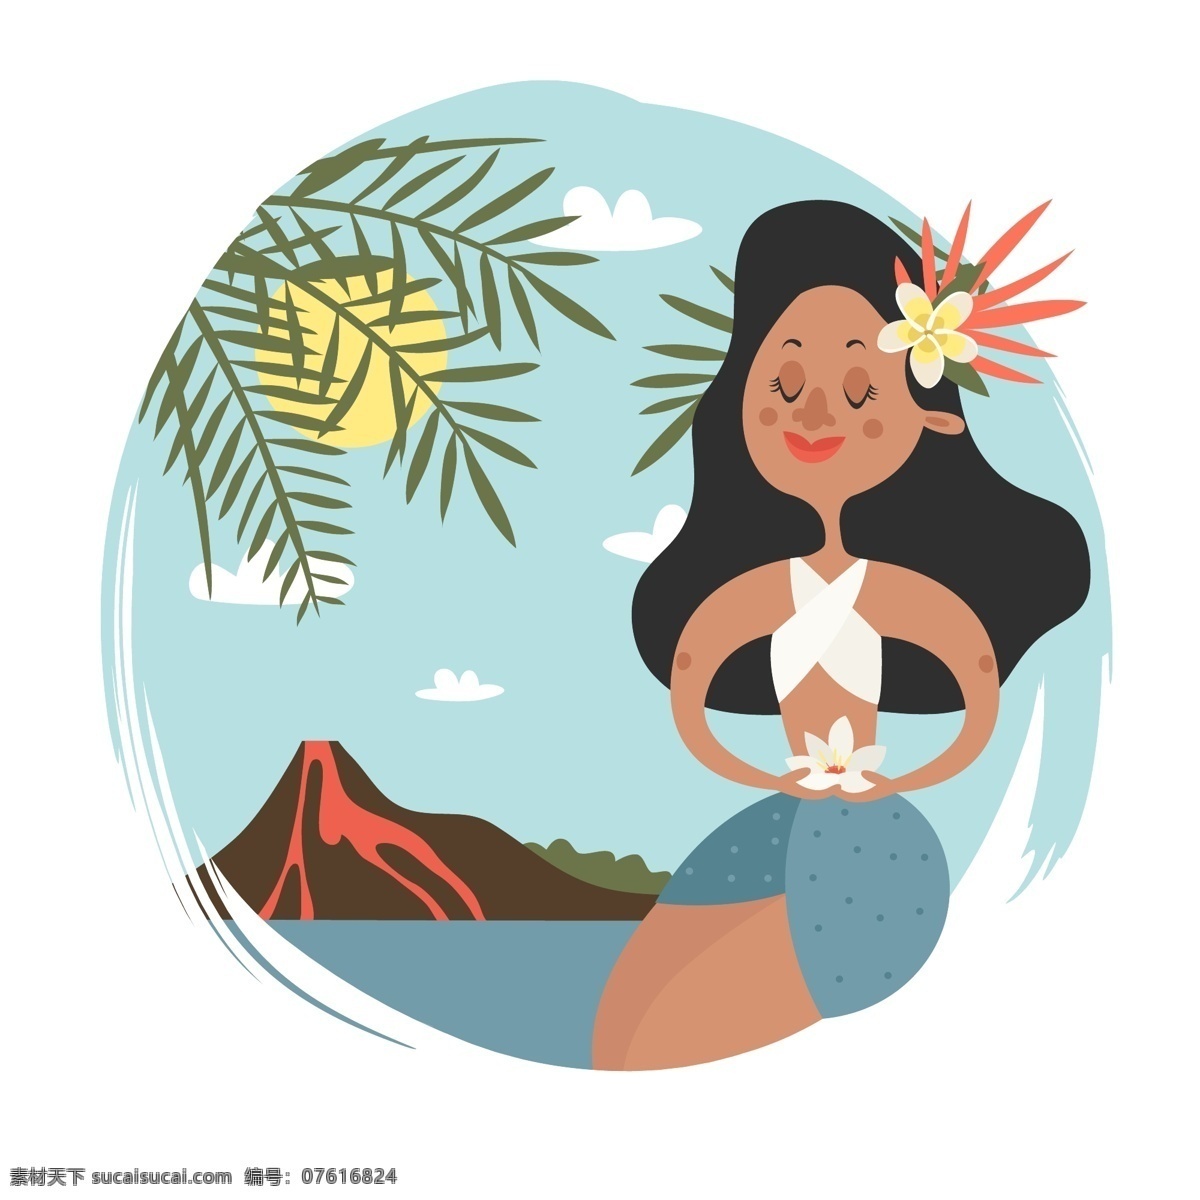 卡通 可爱 夏威夷 风情 少女 插画 人物 风景 手绘 夏天